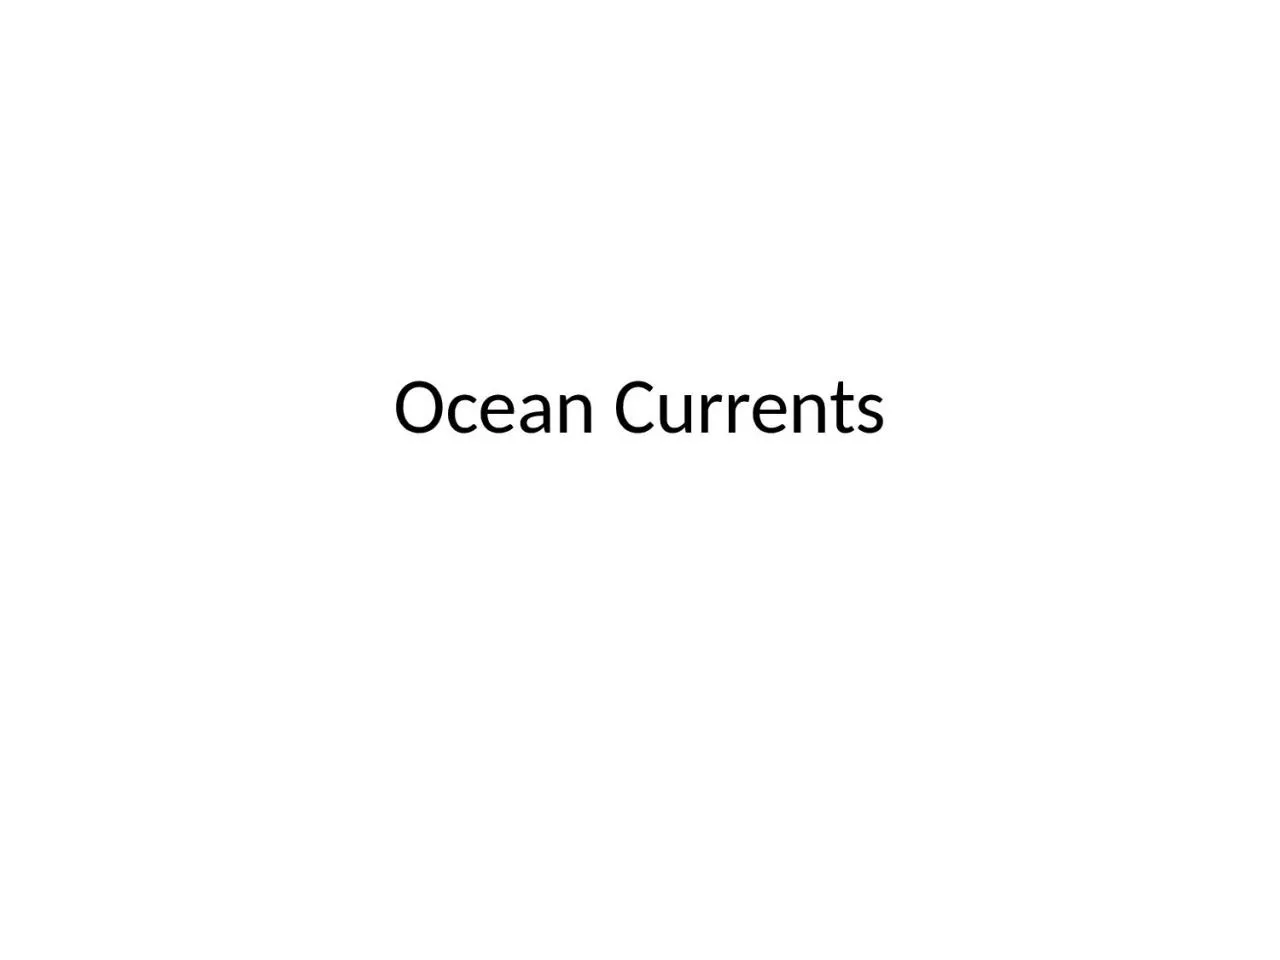 Ocean Currents Early ocean studies